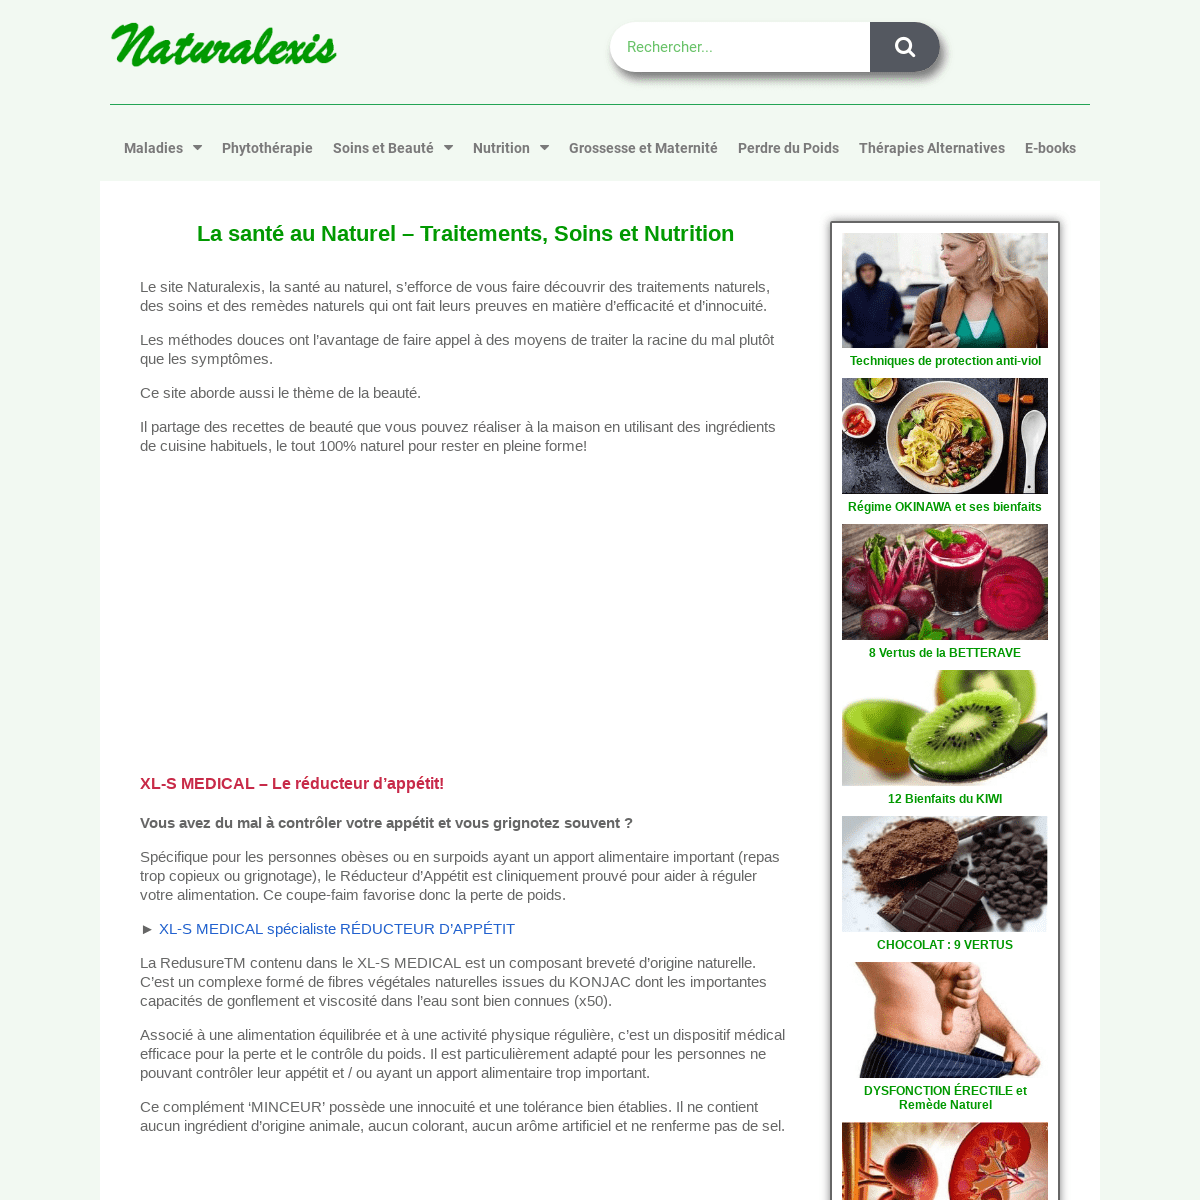 La santé au Naturel - Traitements, Soins et Nutrition | Naturalexis